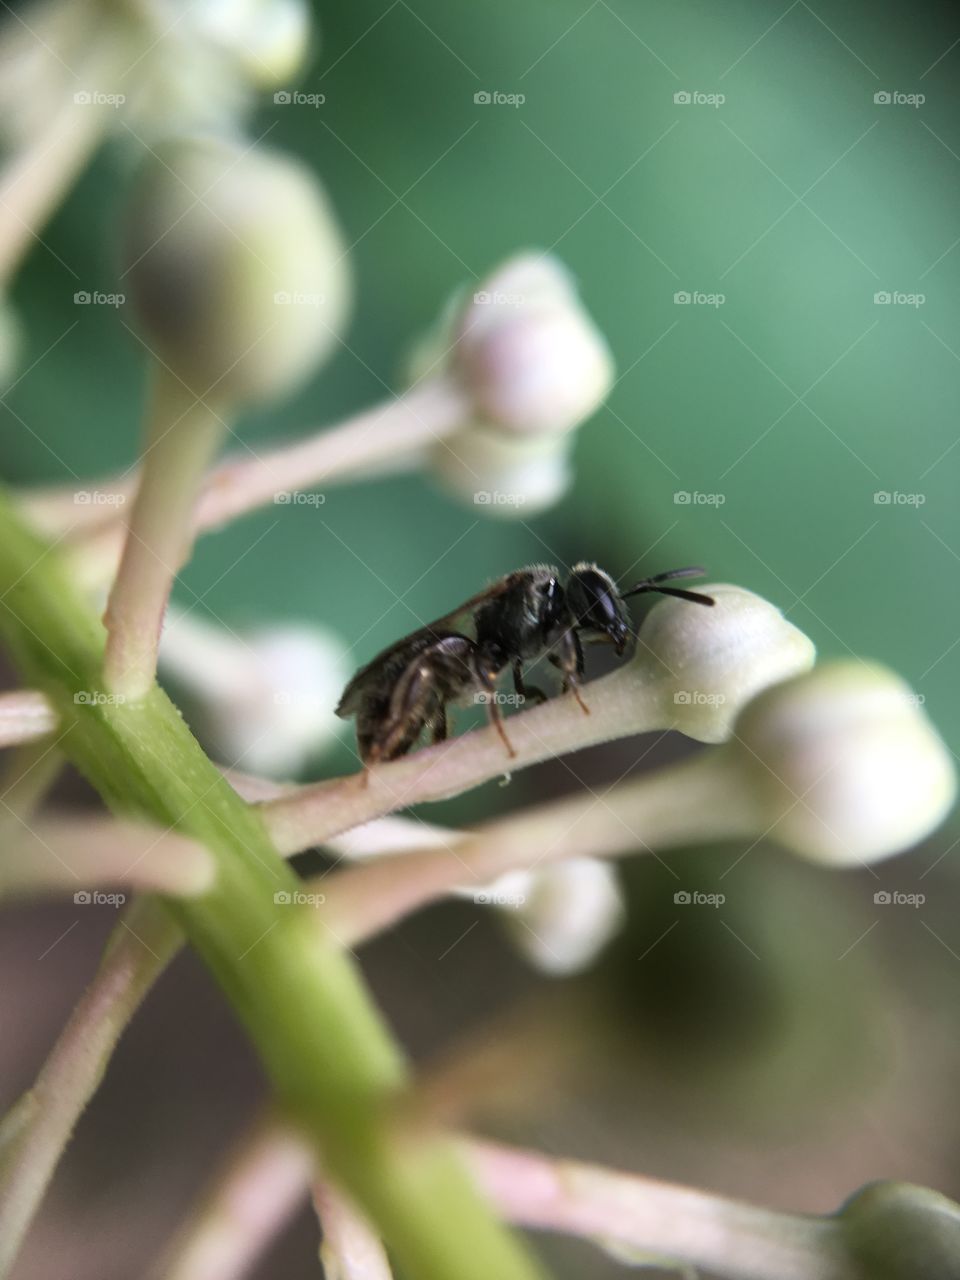 Closeup of bug